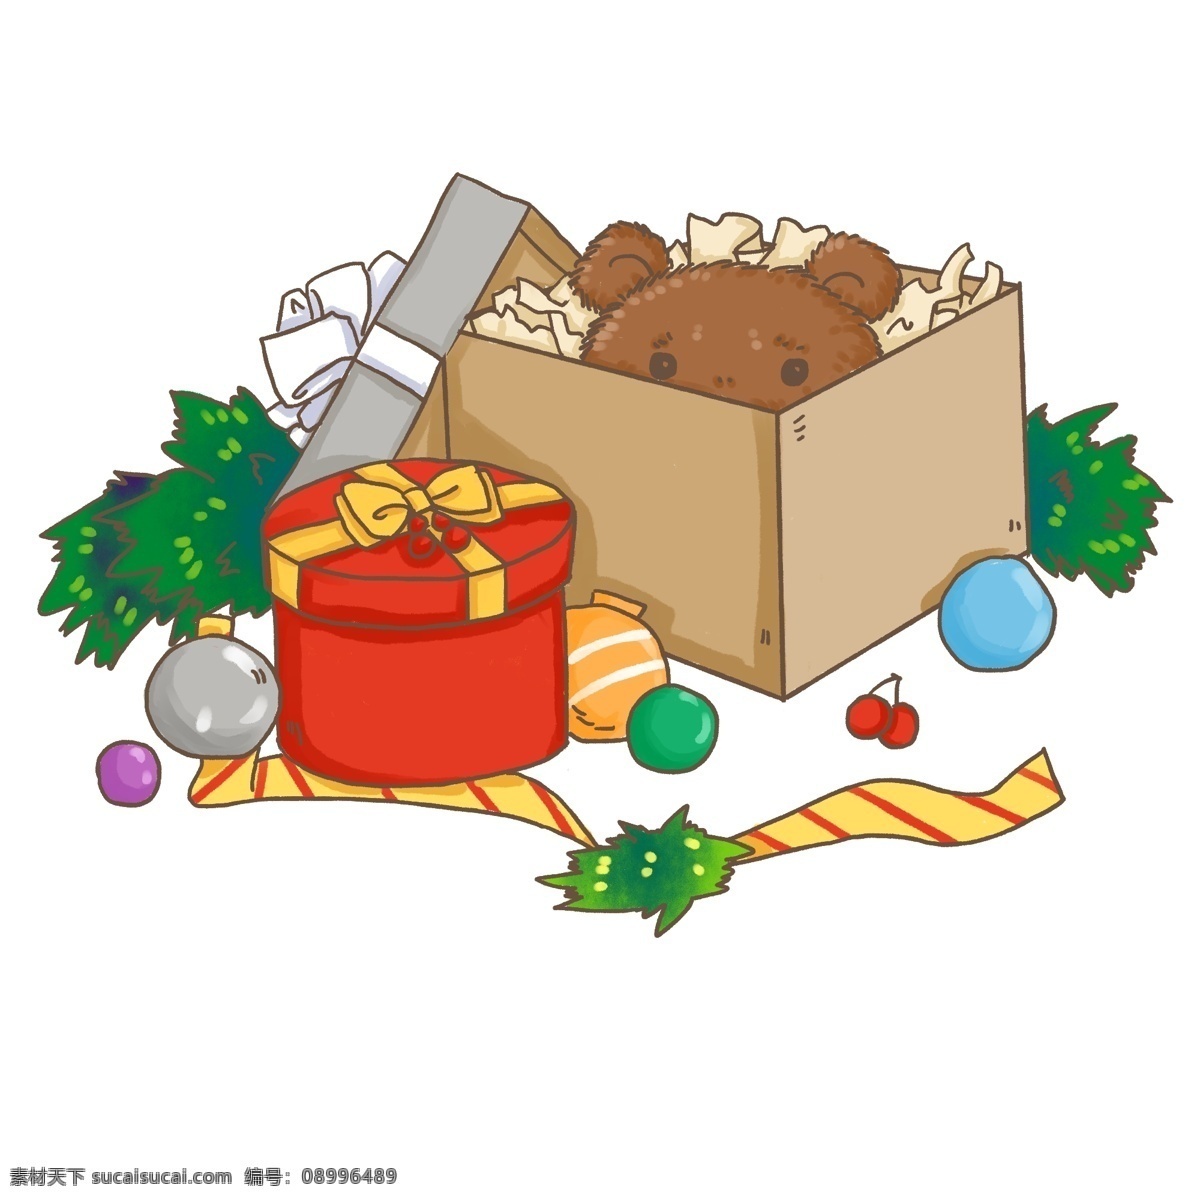 平安夜 圣诞节 礼物 盒 小 熊 玩偶 圆形 礼物盒 温馨 可爱 小熊玩具 圆形盒子 儿童 松枝 西方节日